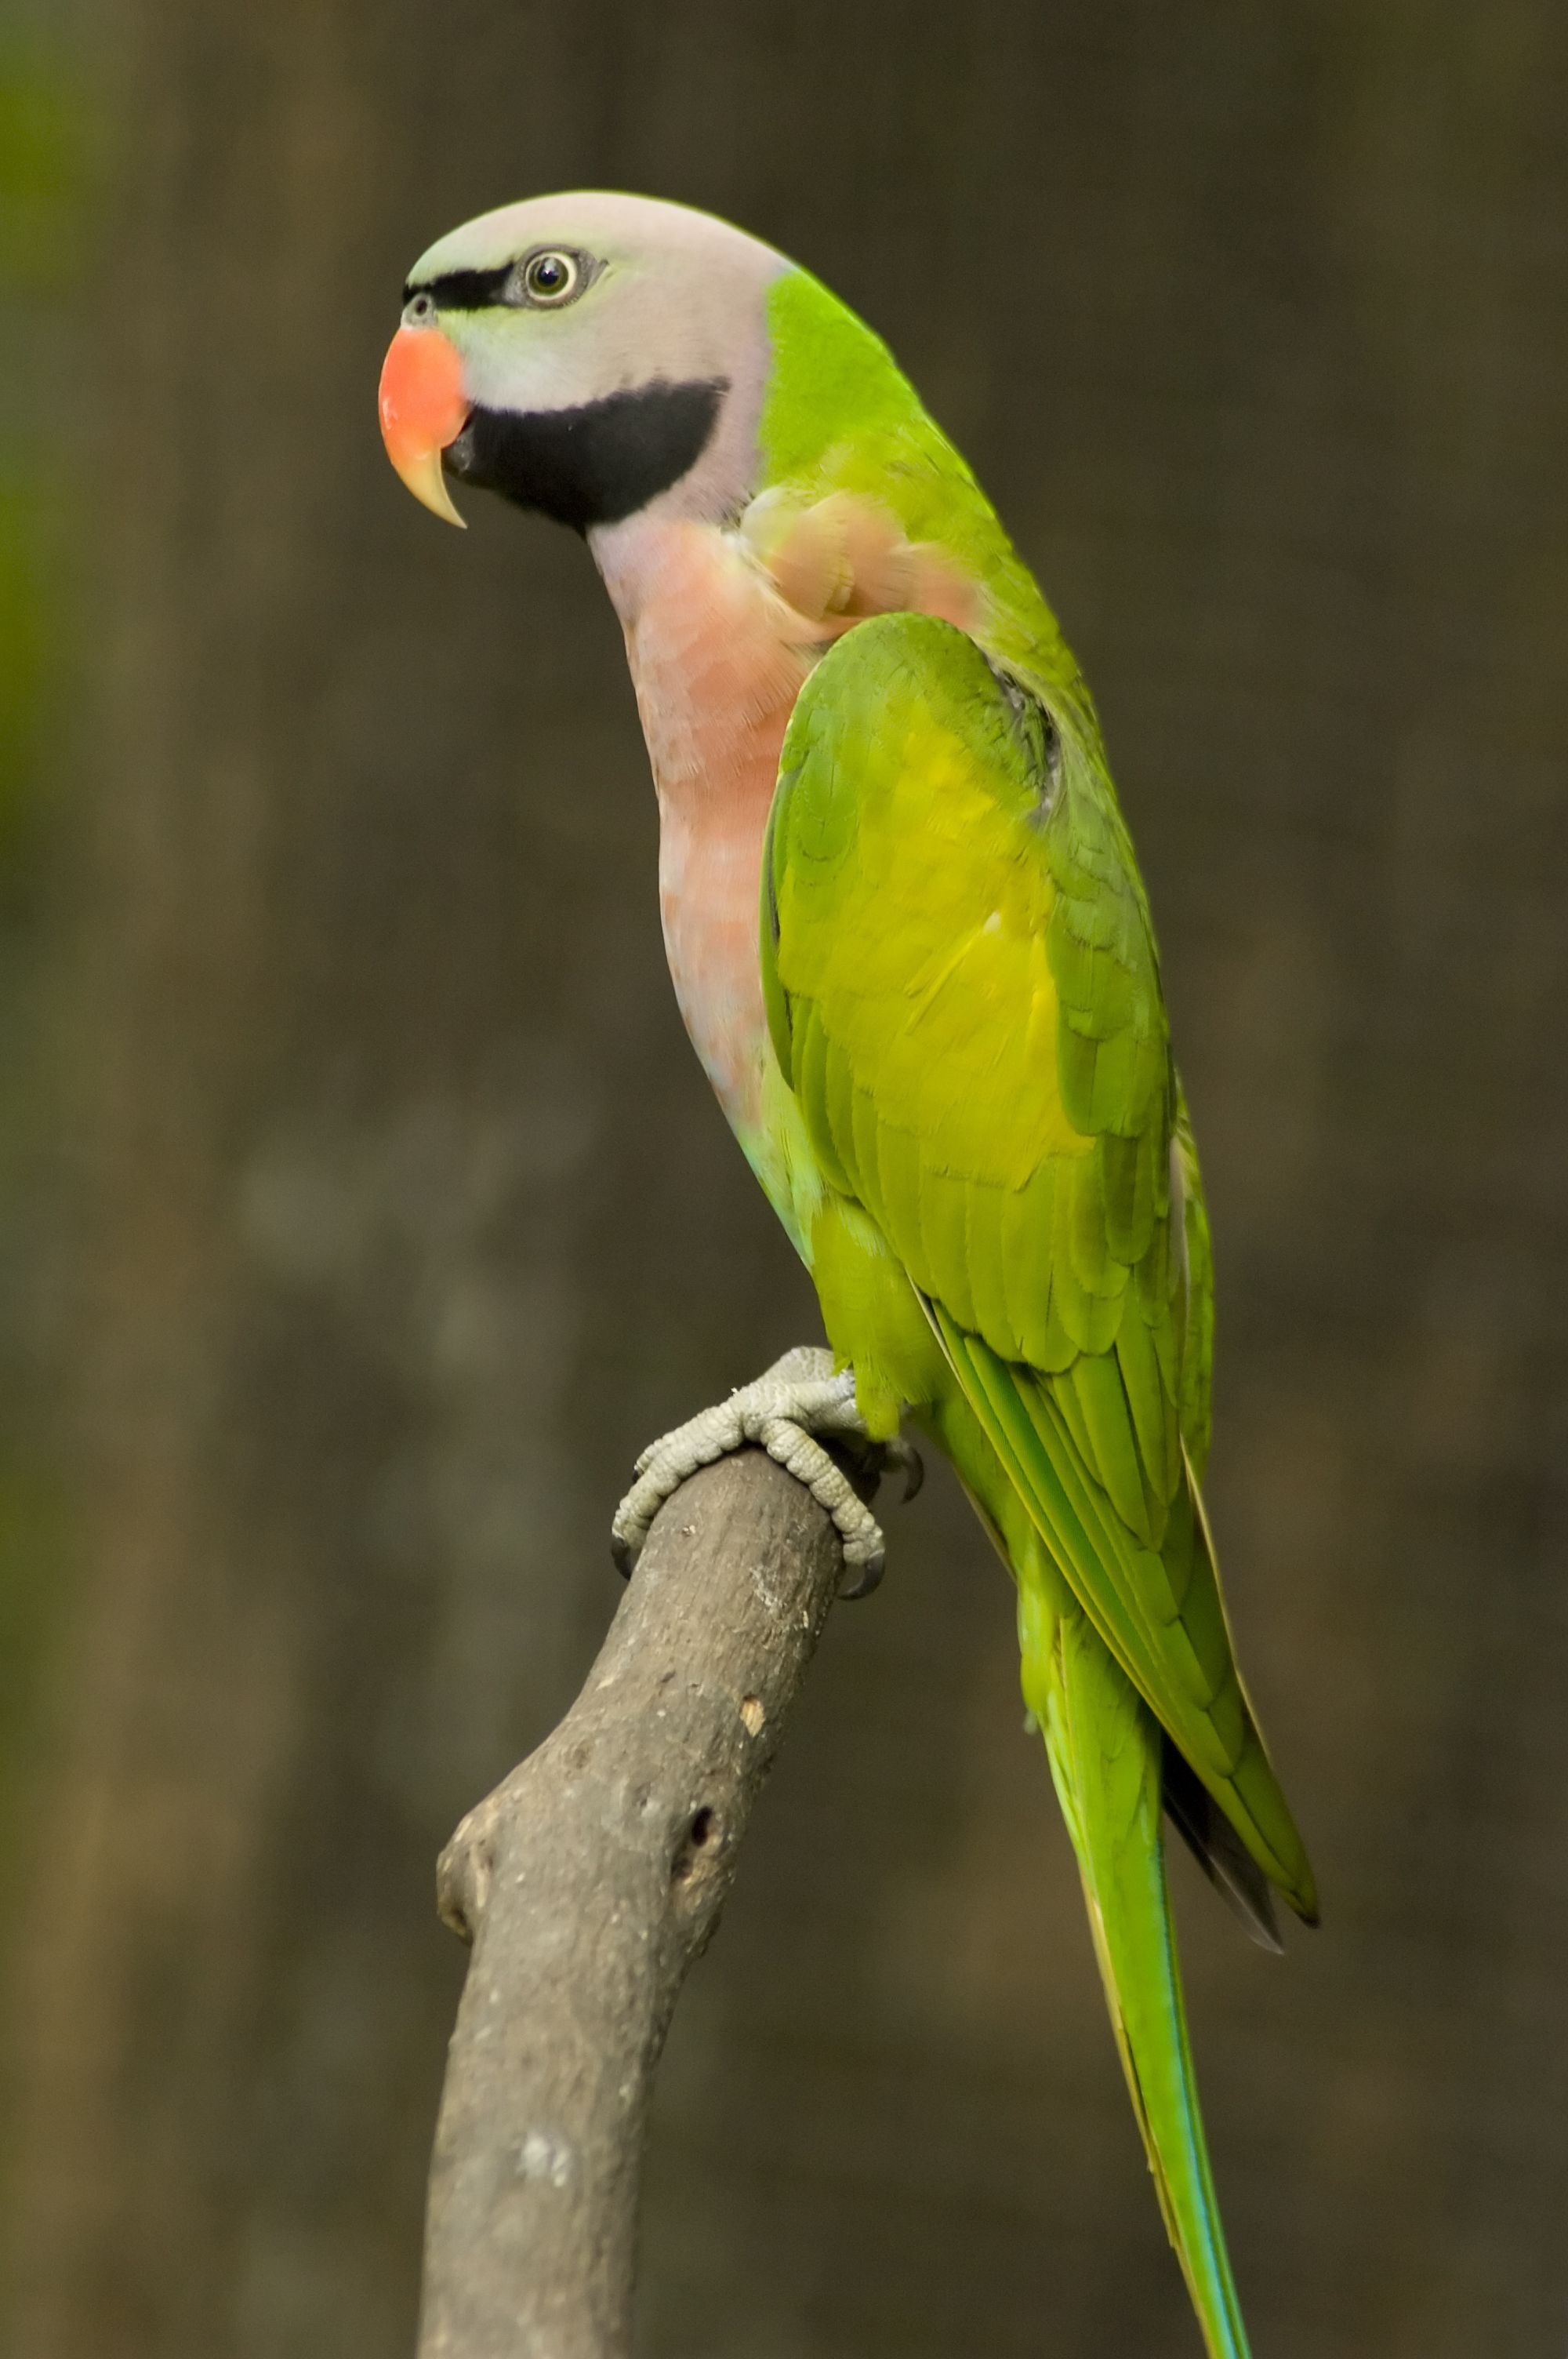 The glorious Moustache Parakeet Parrot. | Bird Watcher | Pinterest ...